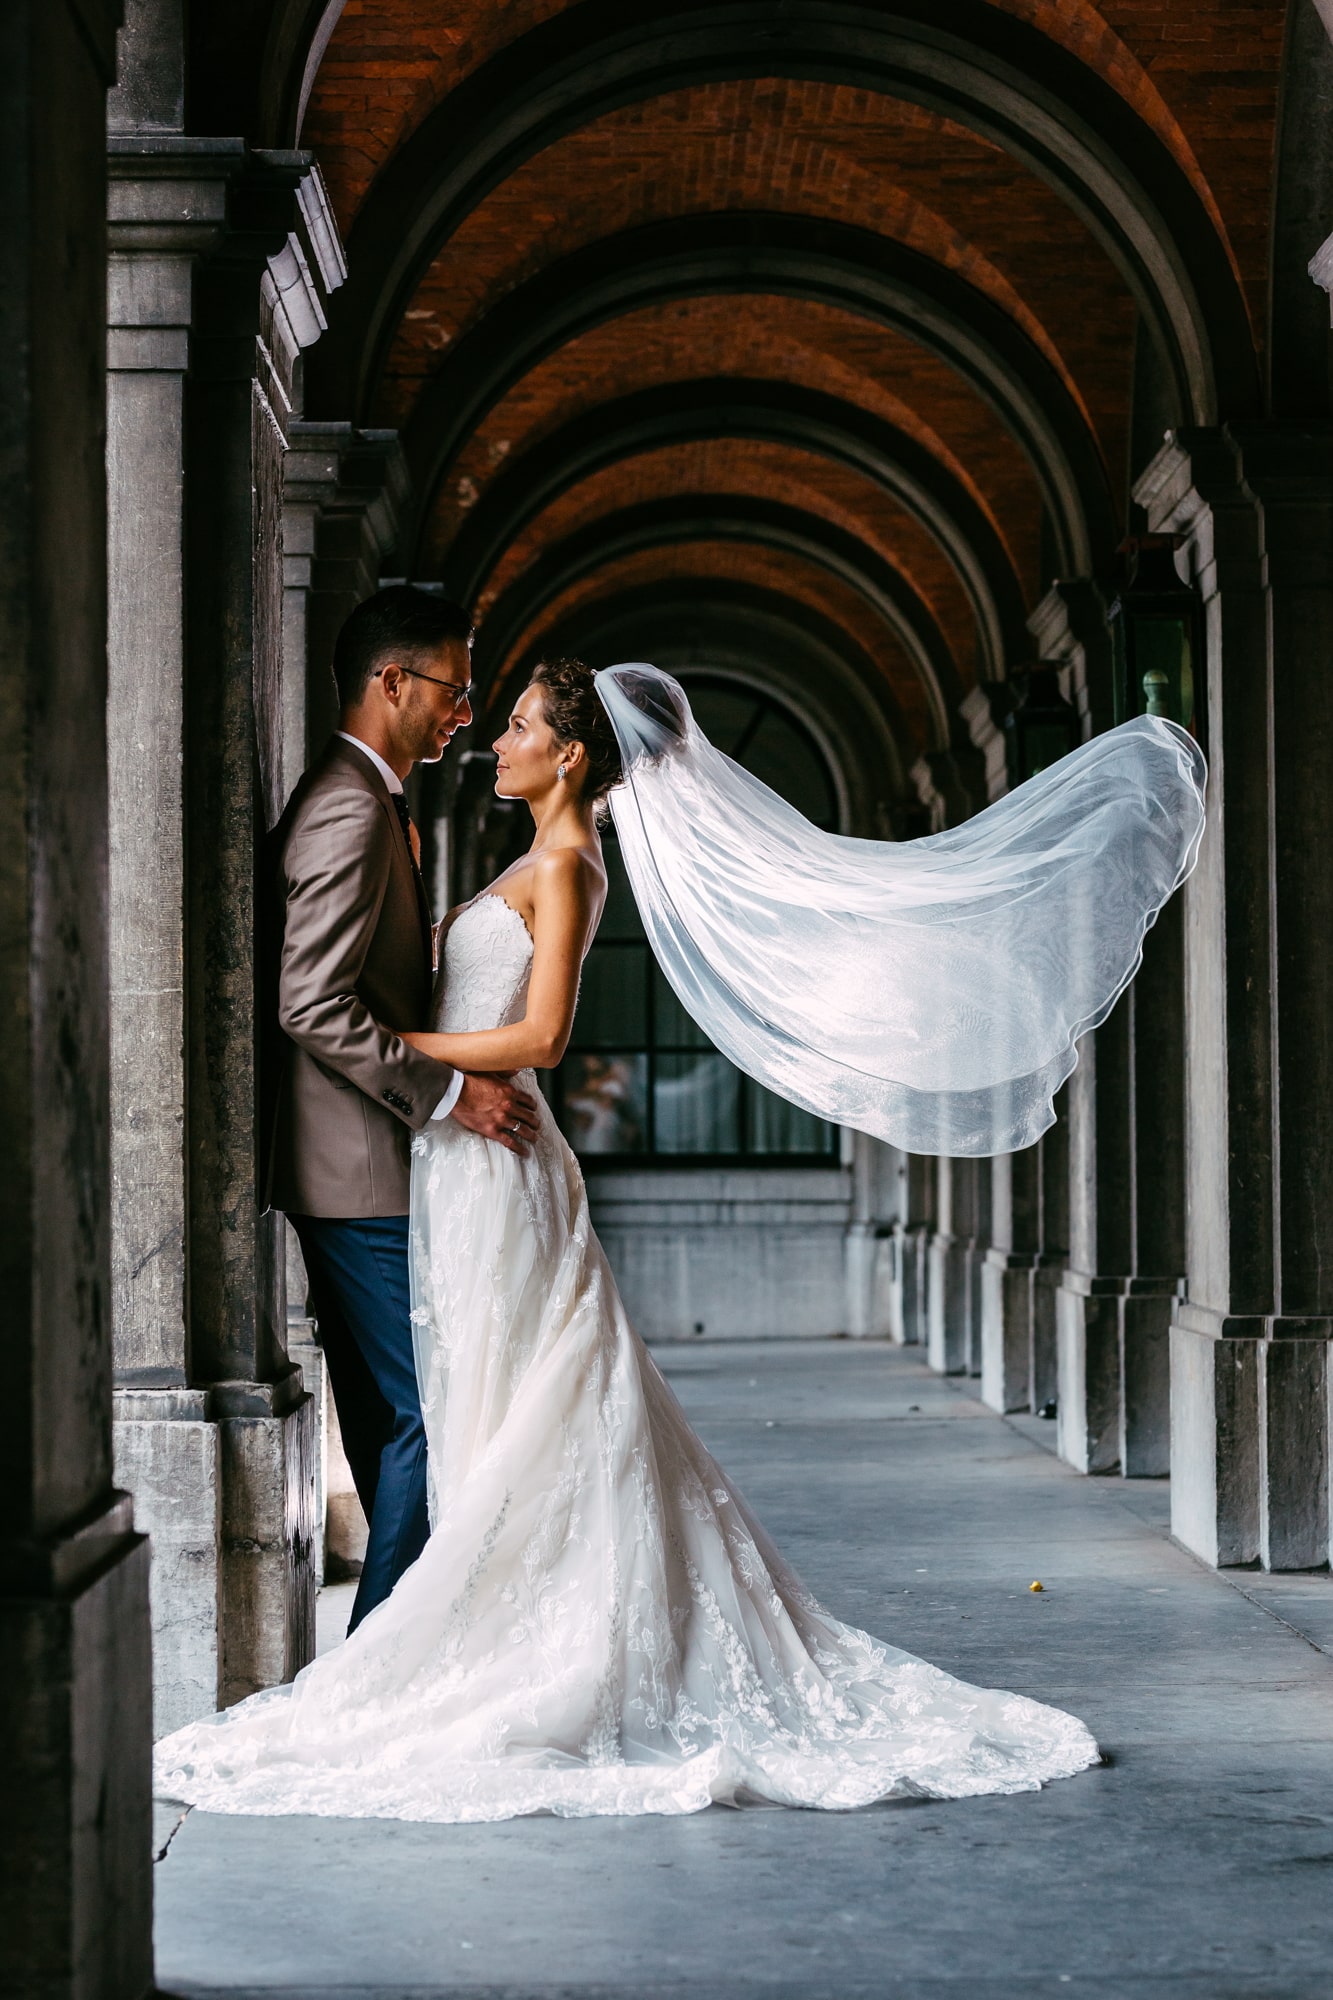 Een bruid en bruidegom, vastgelegd in prachtige trouwfotografie, poseren onder de bogen terwijl hun sluier sierlijk opwaait in de wind.